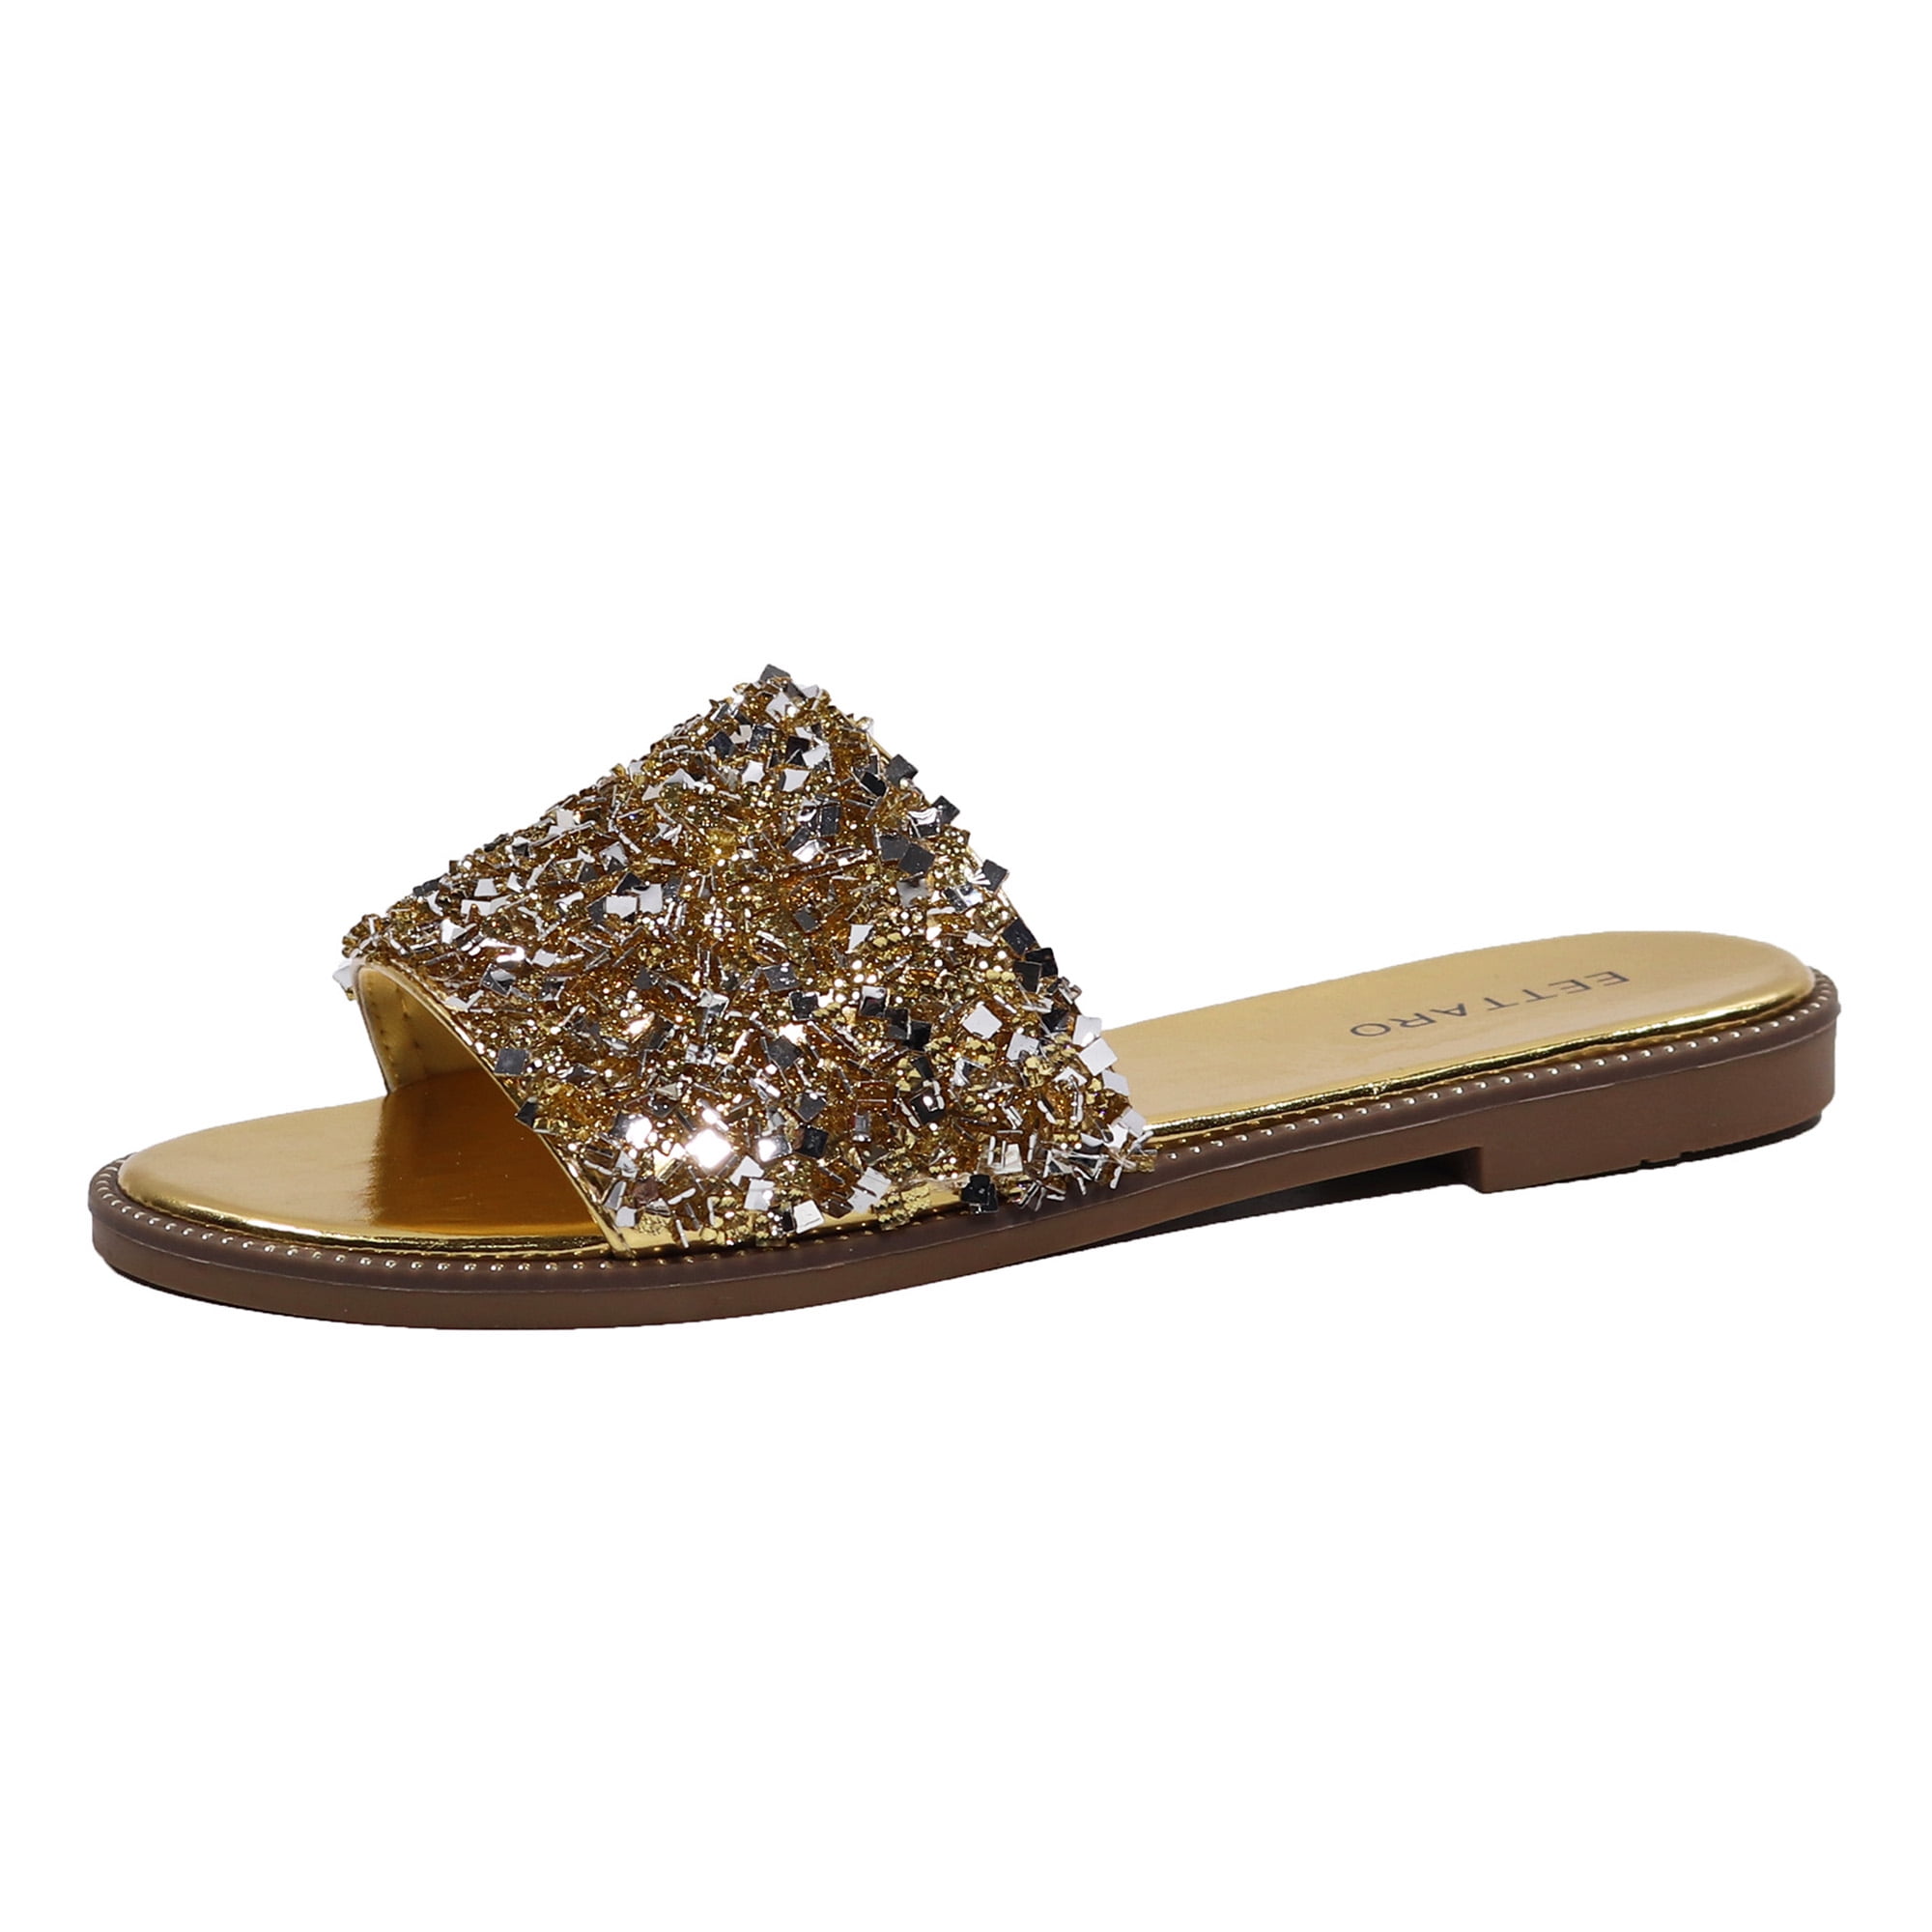 EETTARO Women's Glitter Shiny Slide Sandals Sparkle Fancy Flat Slippers ...